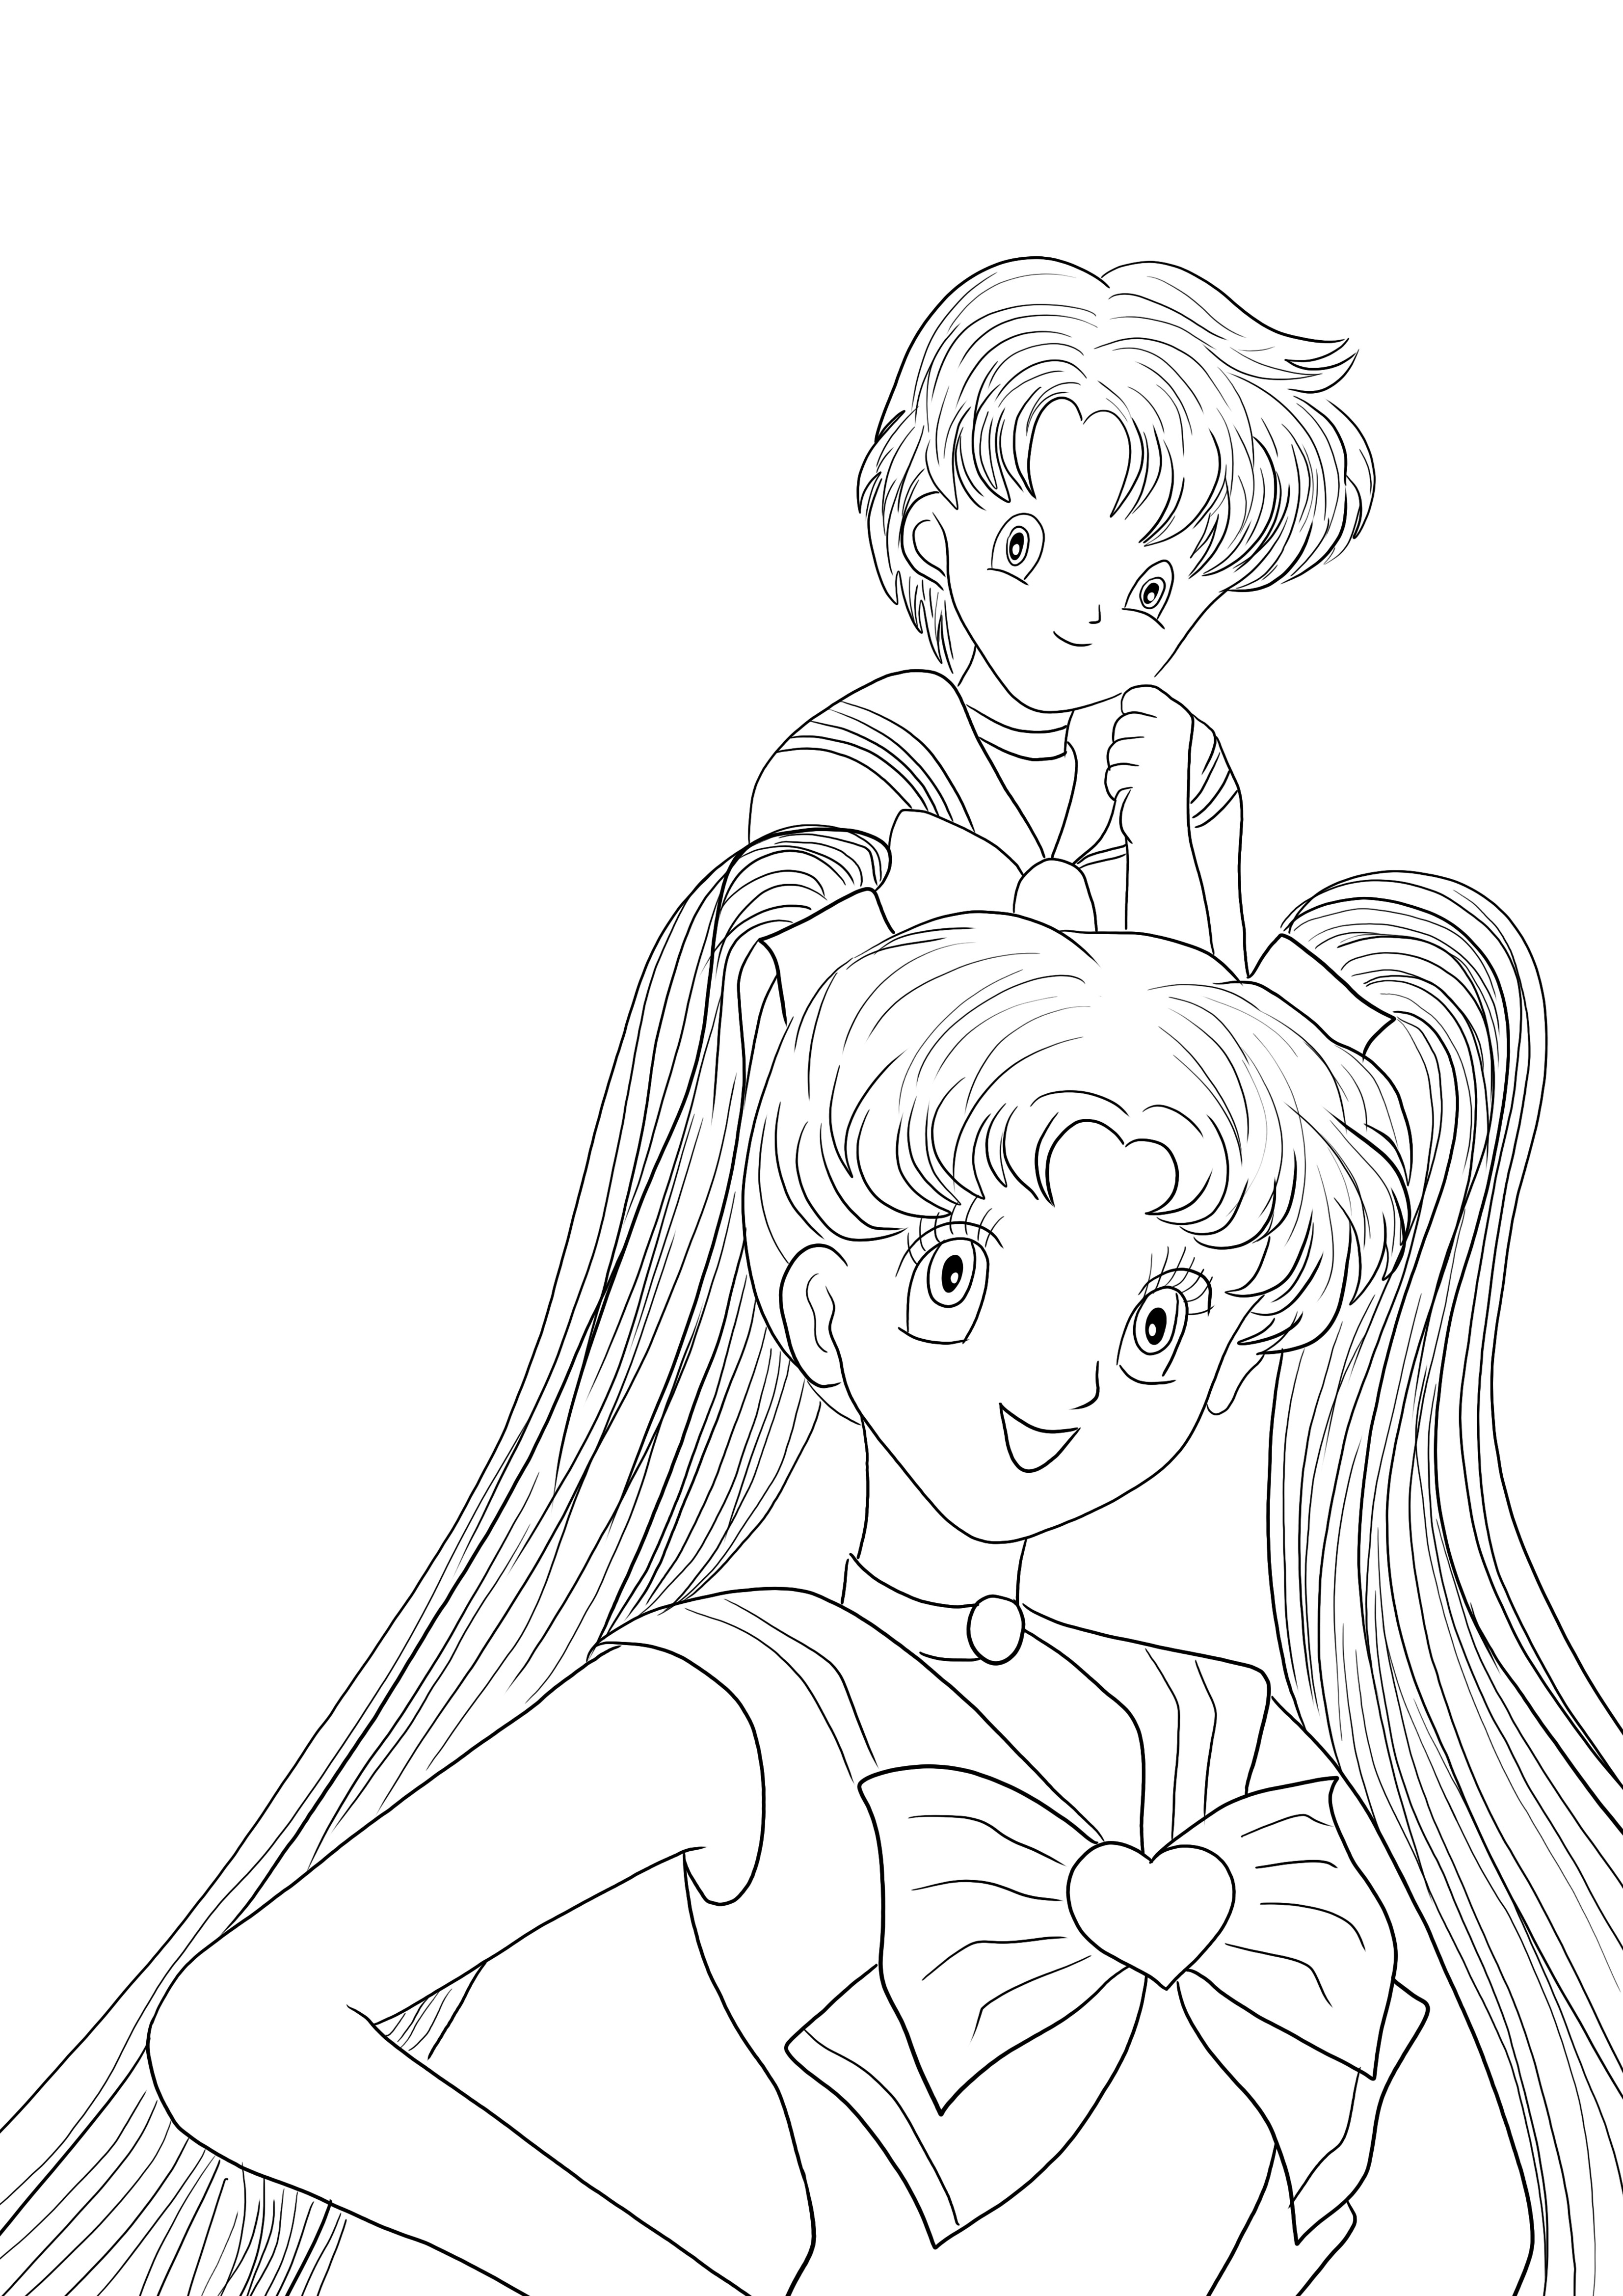 Aqui está uma folha de colorir Sailor Moon Girls gratuita para colorir por crianças